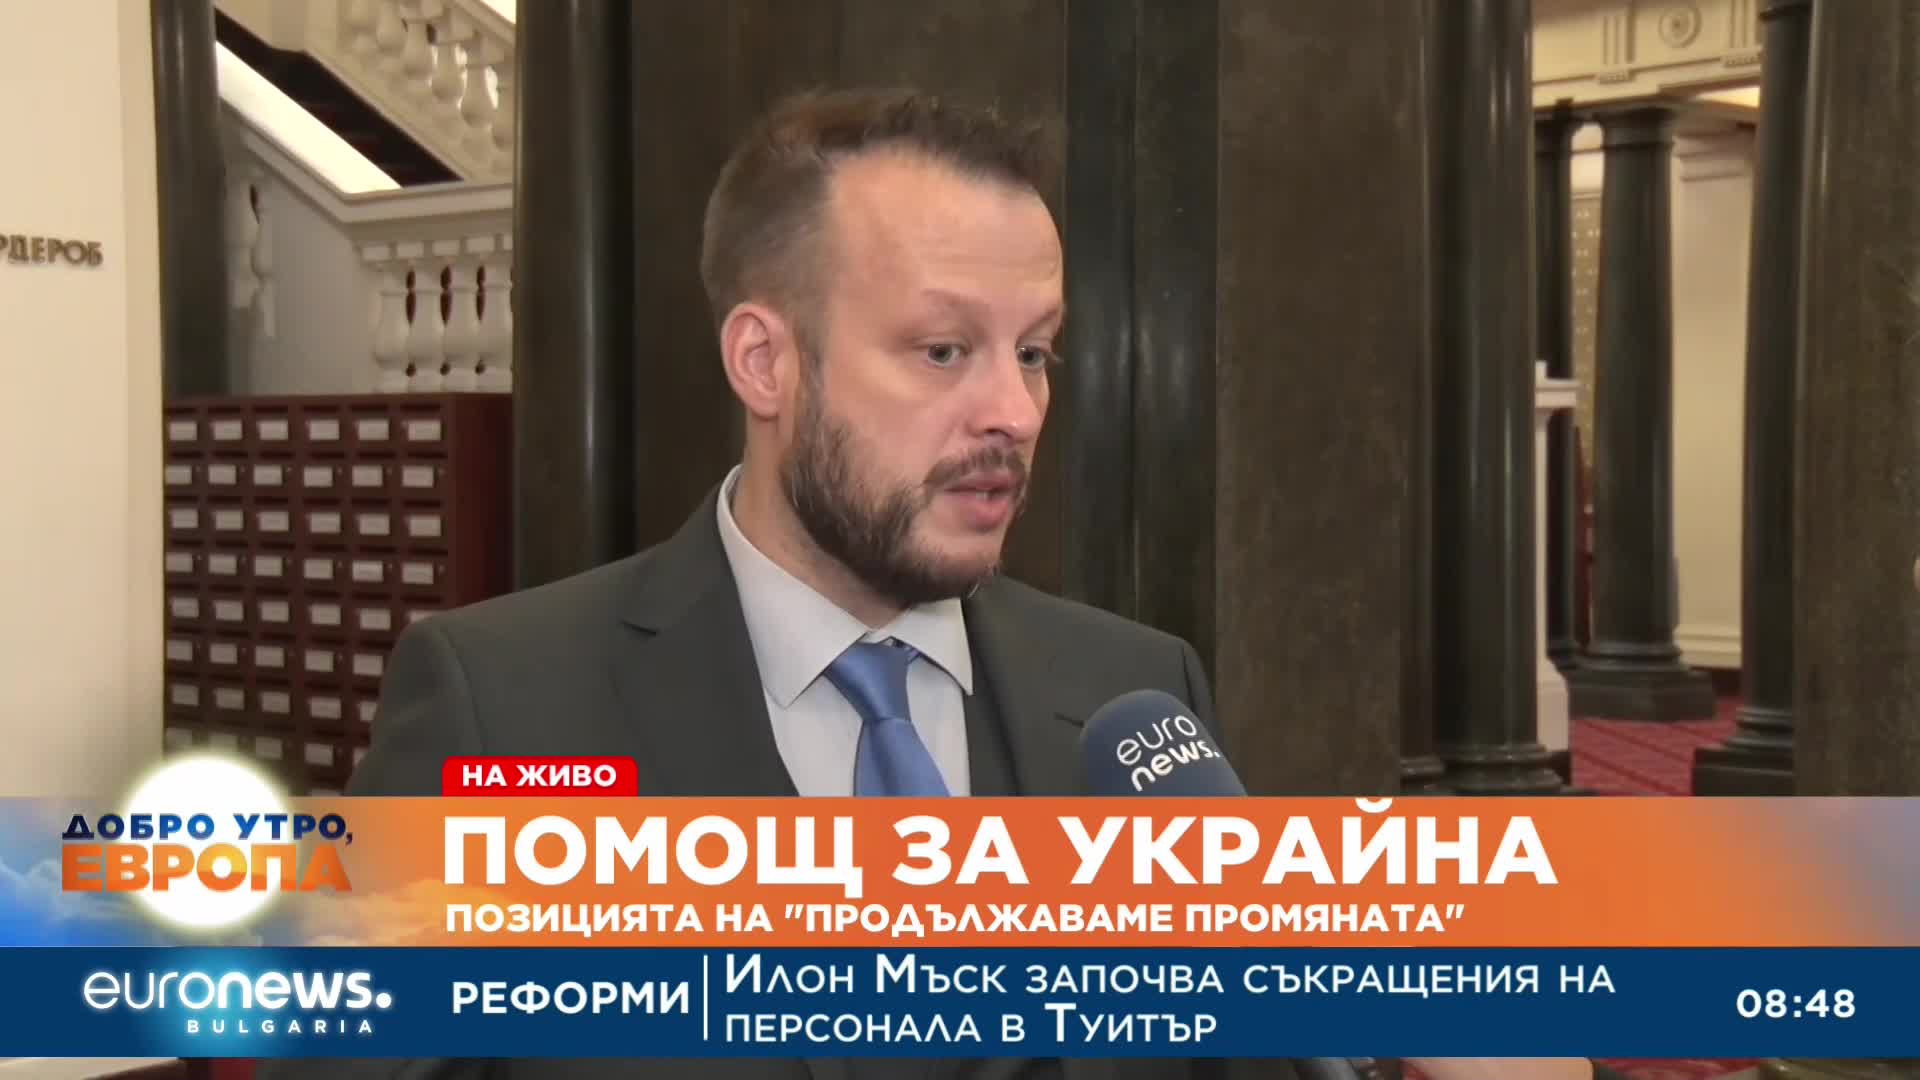 Йордан Терзийски, ПП: Убеден съм, че България има с какво да помогне на Украйна